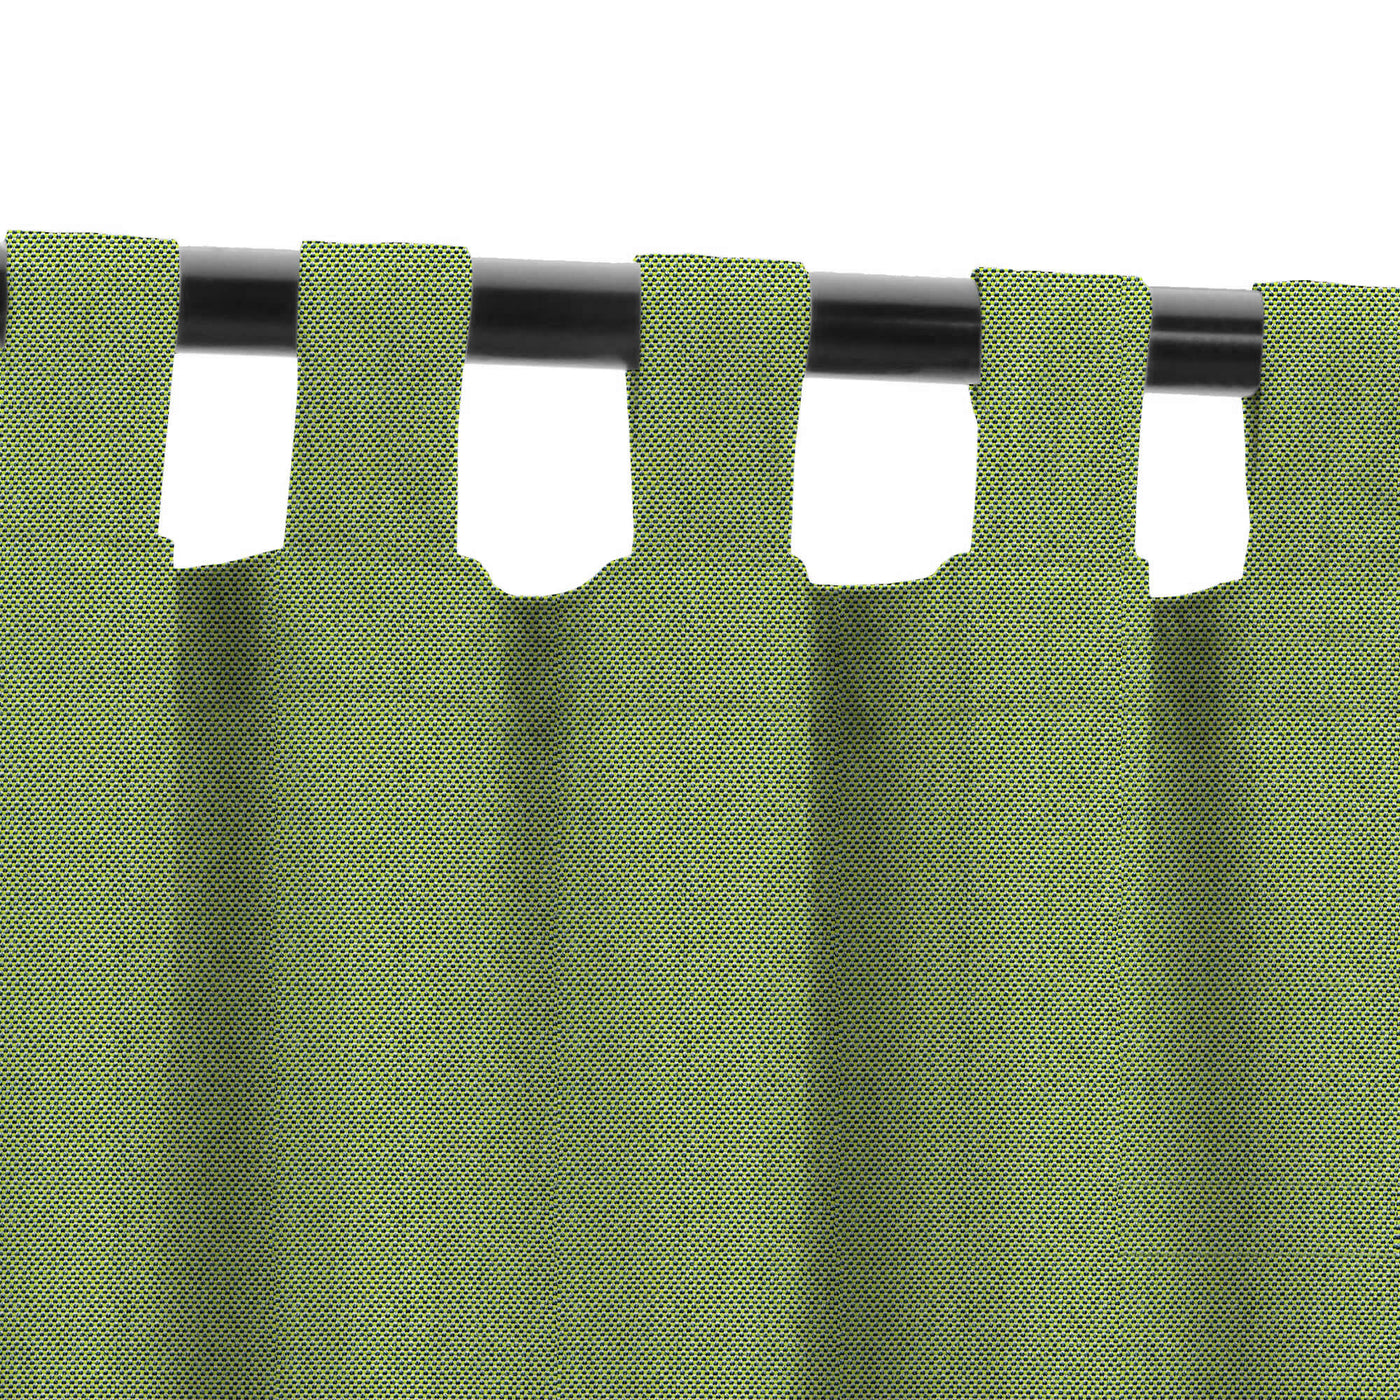 PENGI Outdoor Curtains Waterproof - Sailcloth Cedar